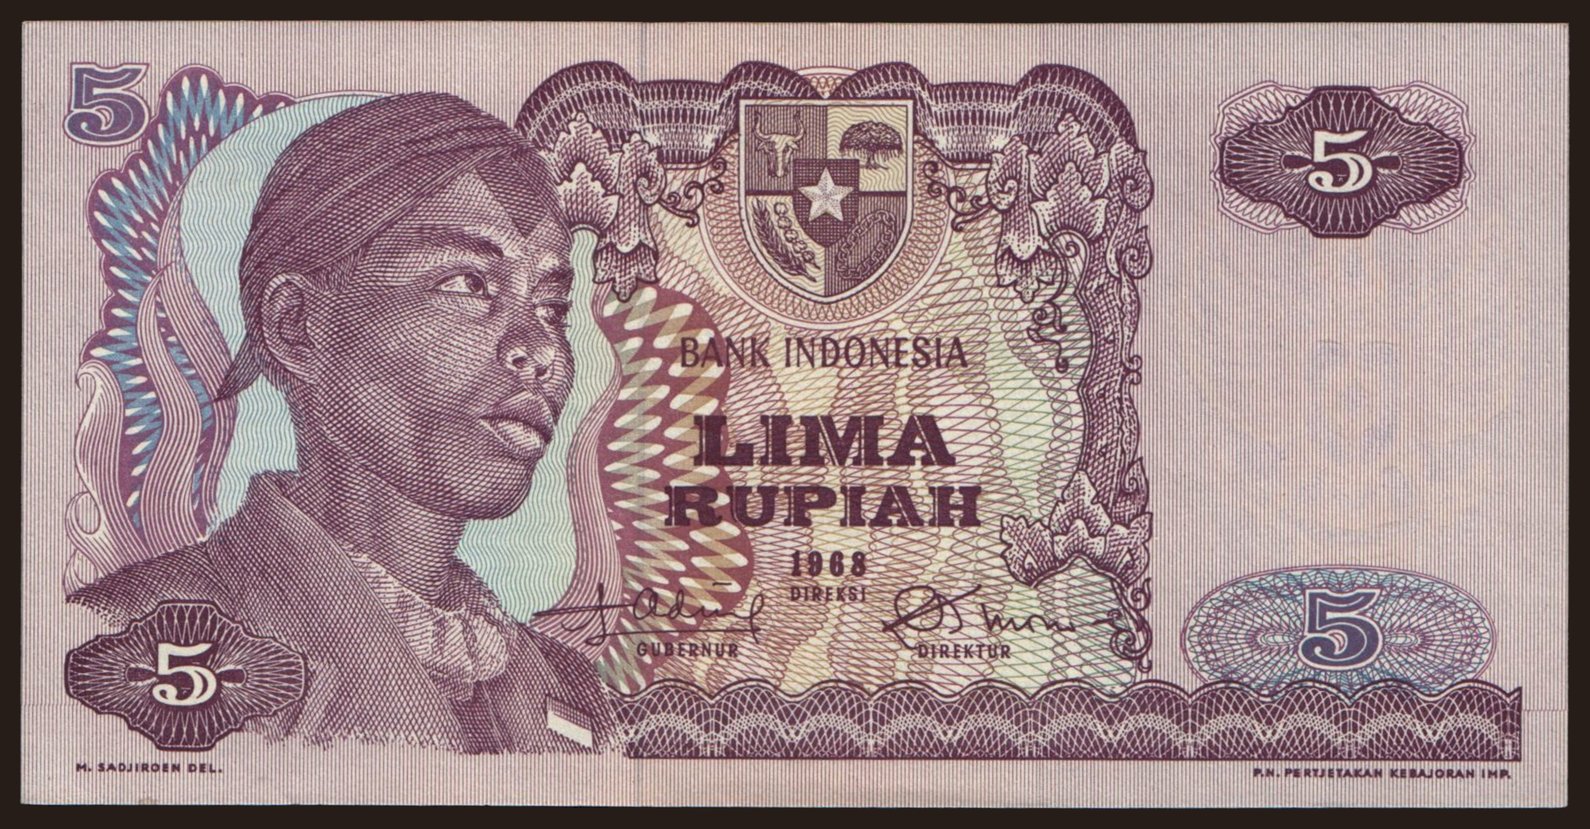 5 rupiah, 1968